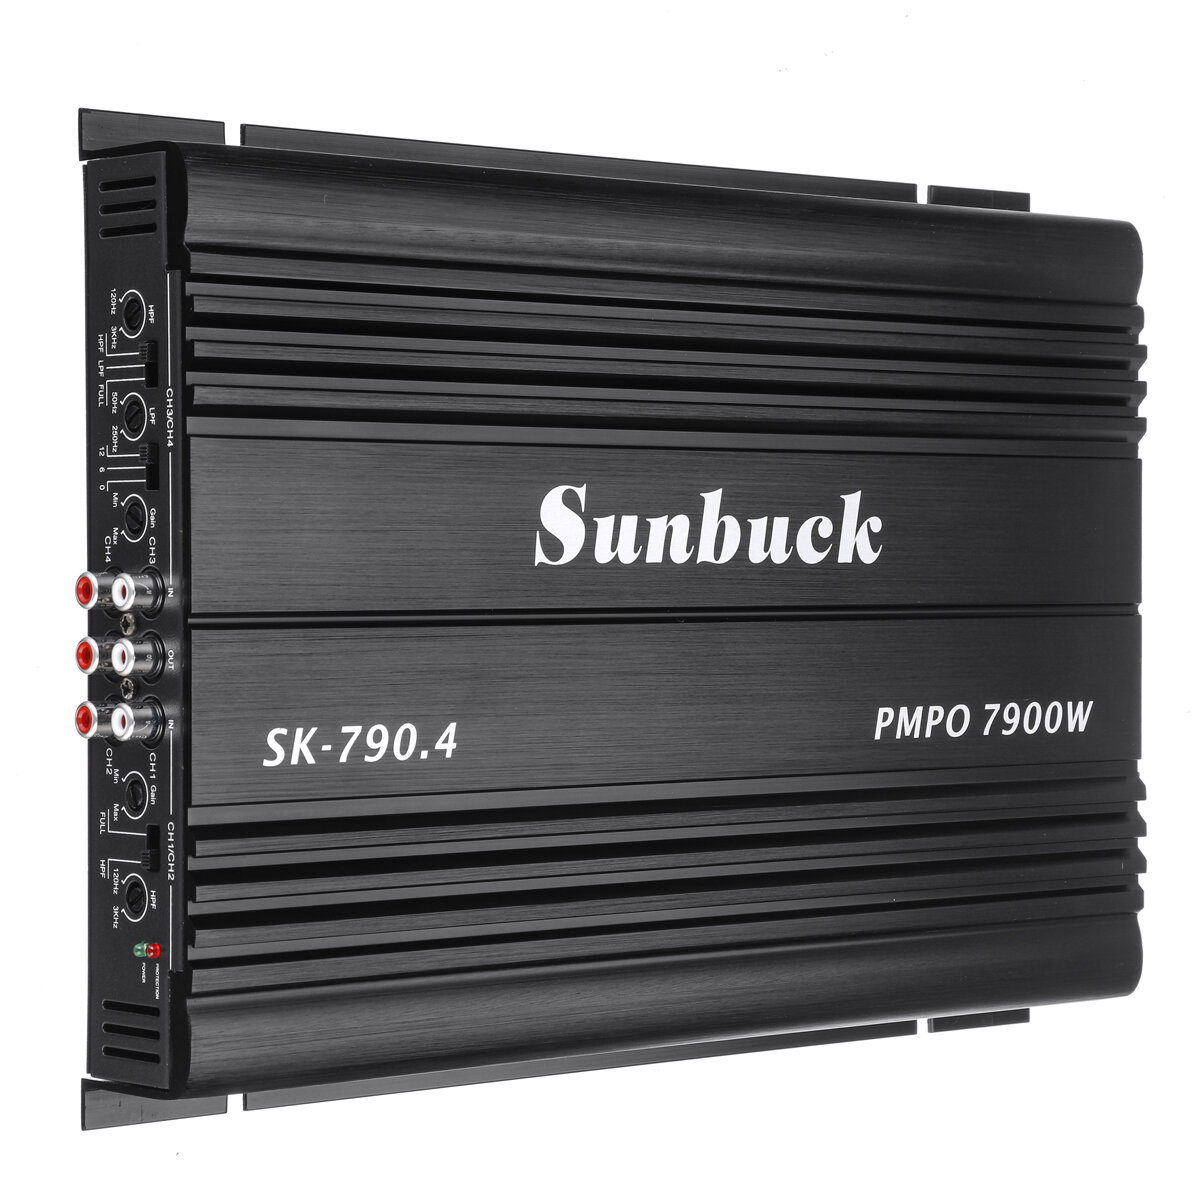 Amplificatore di potenza per auto a 4 canali SK-790.4 da 7900W, classe A/B, stereo, surround, lettore audio per subwoofe